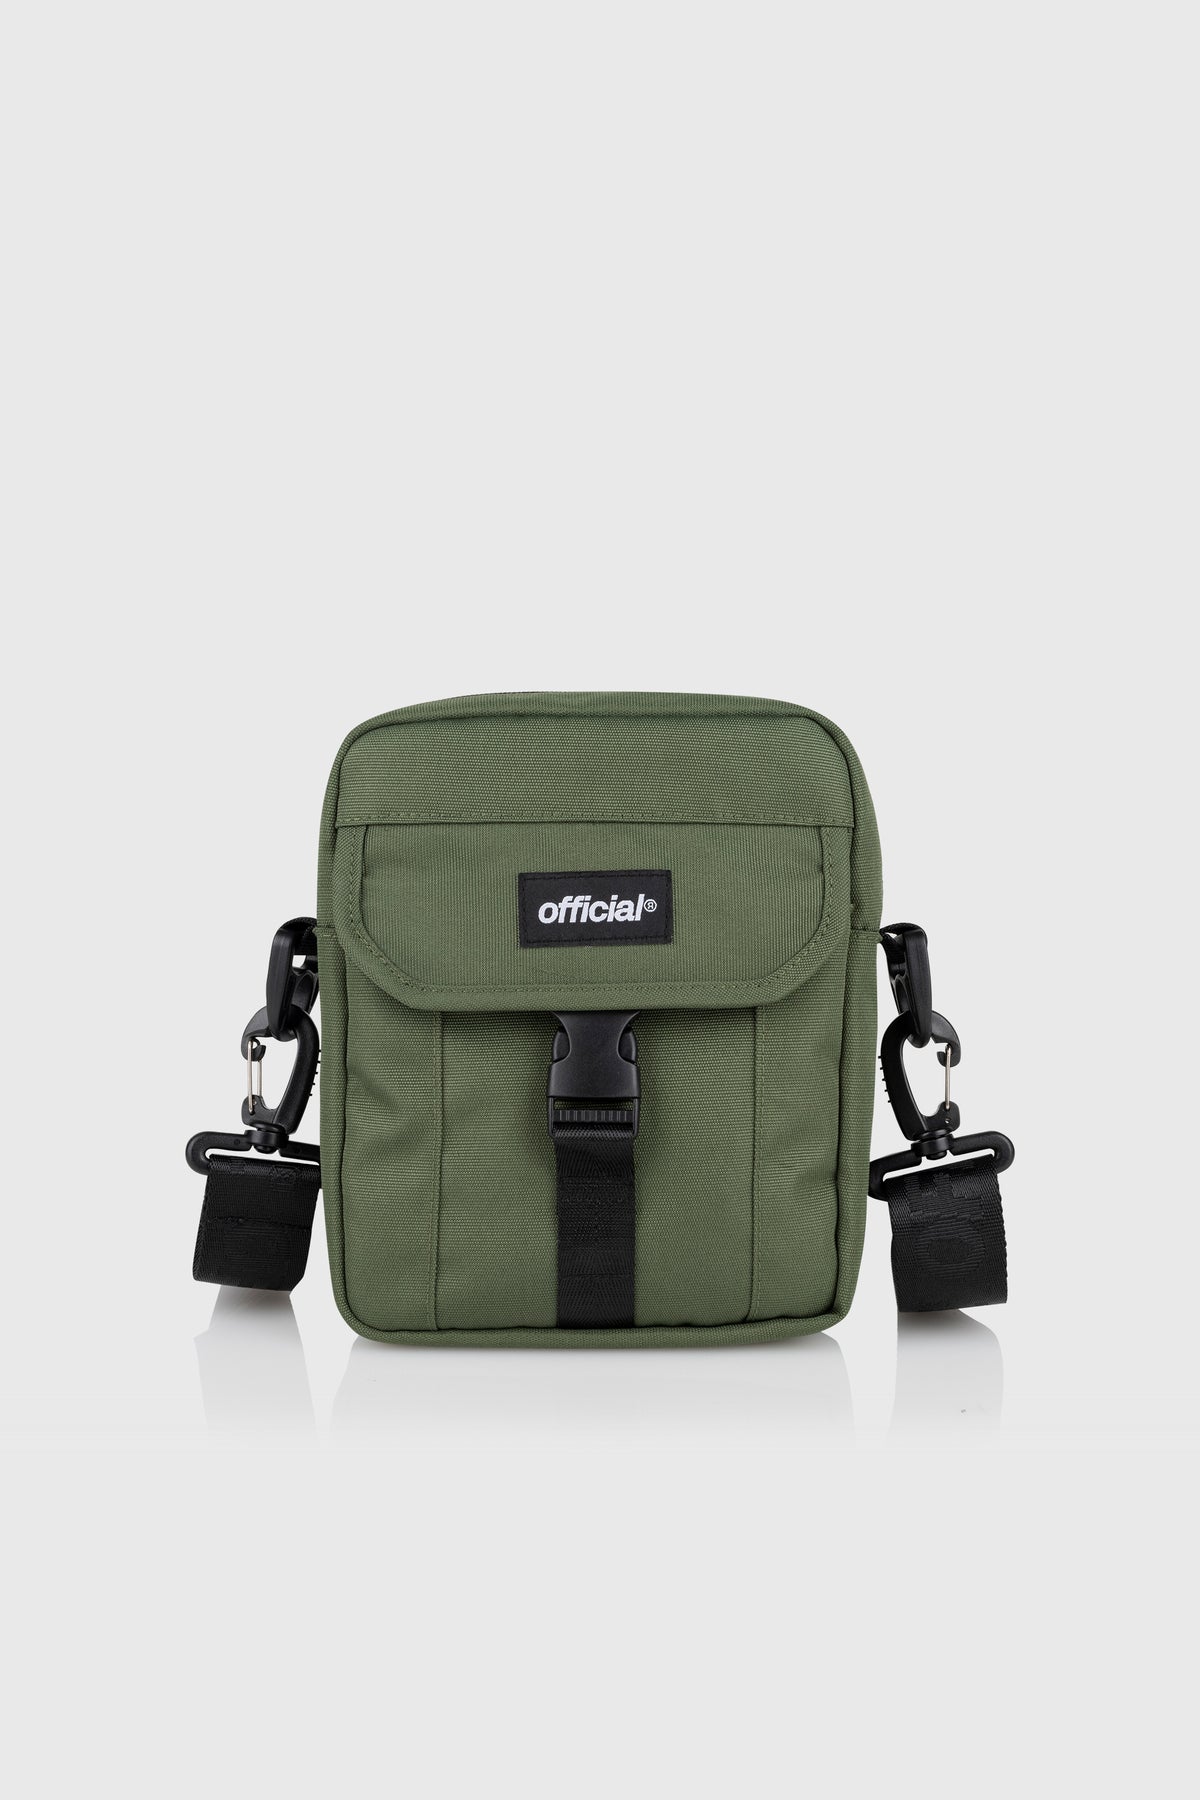 Essential Shoulder Bag (Olive) – The Official Brand